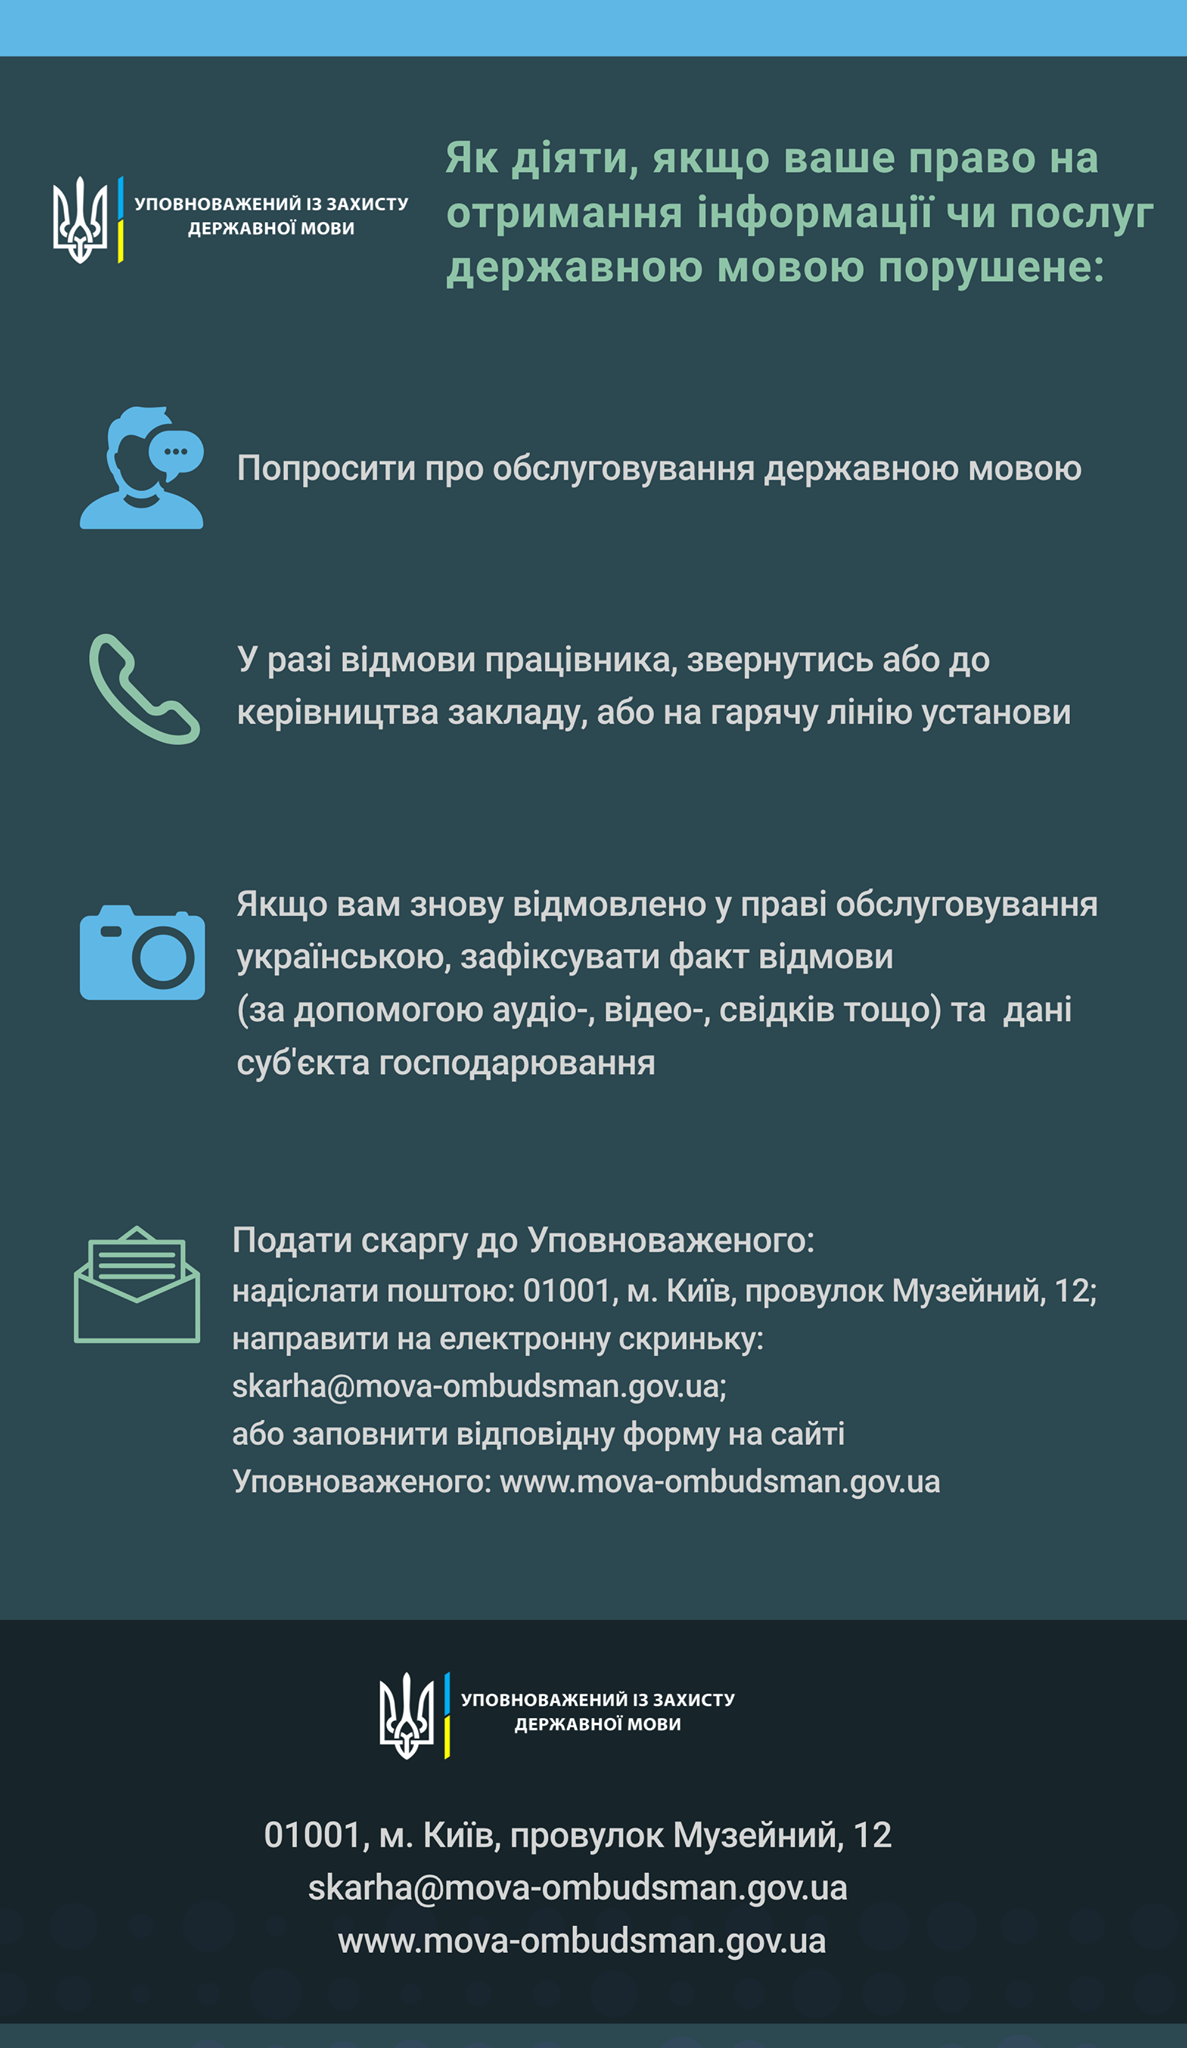 С 16 января обслуживание должно быть на украинском языке: что делать в случае отказа